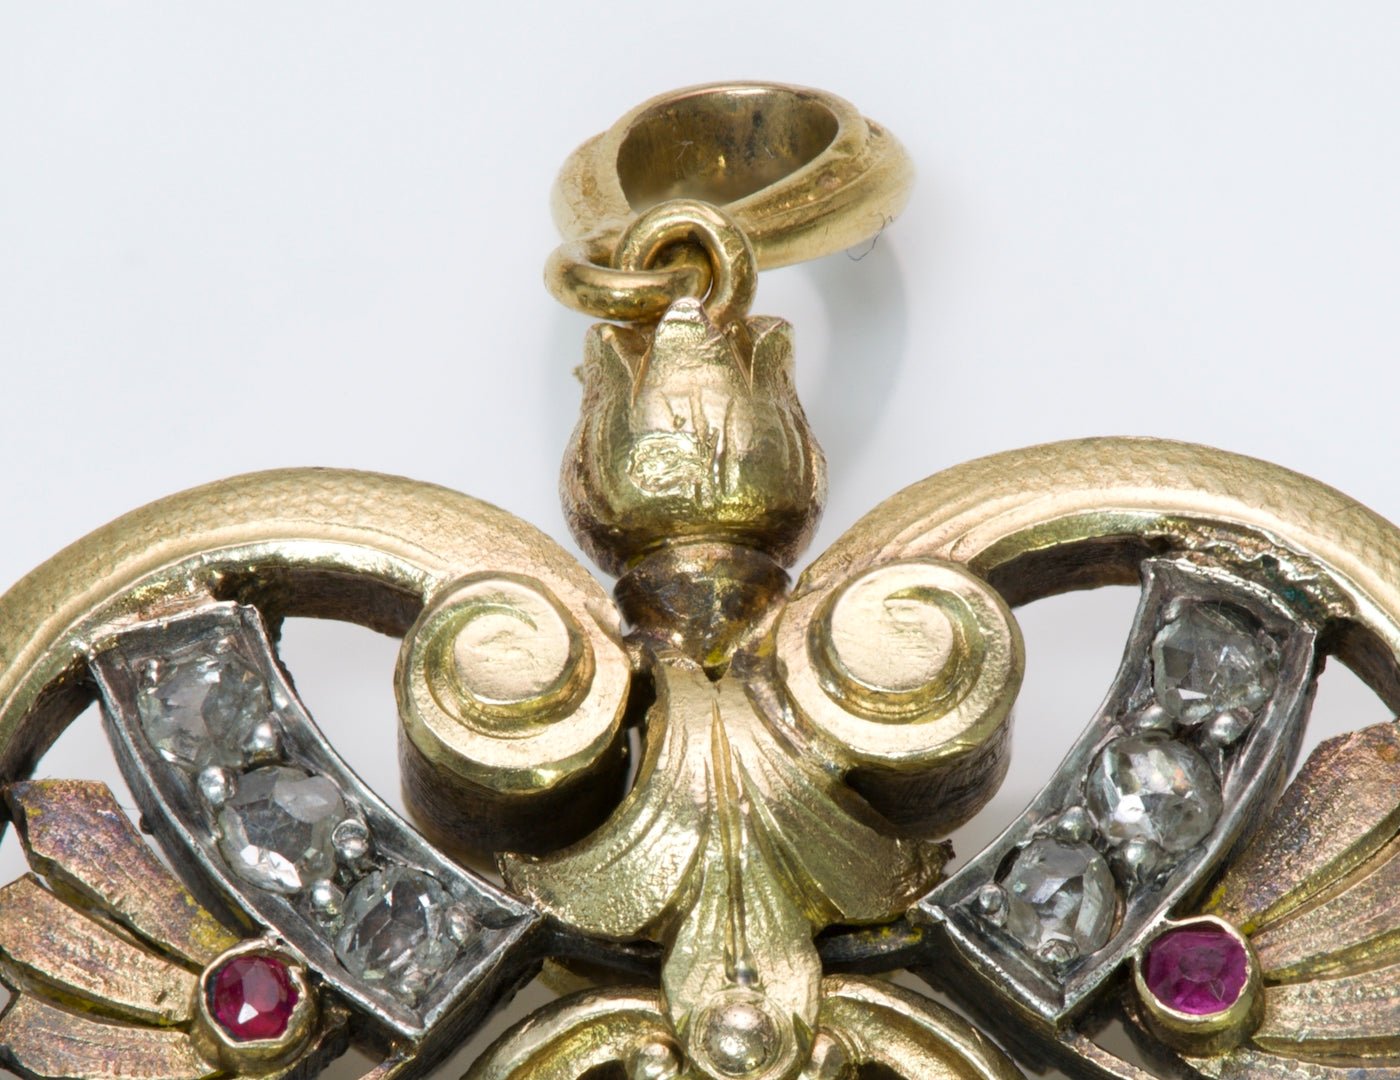 French Art Nouveau Gold Pearl Pendant